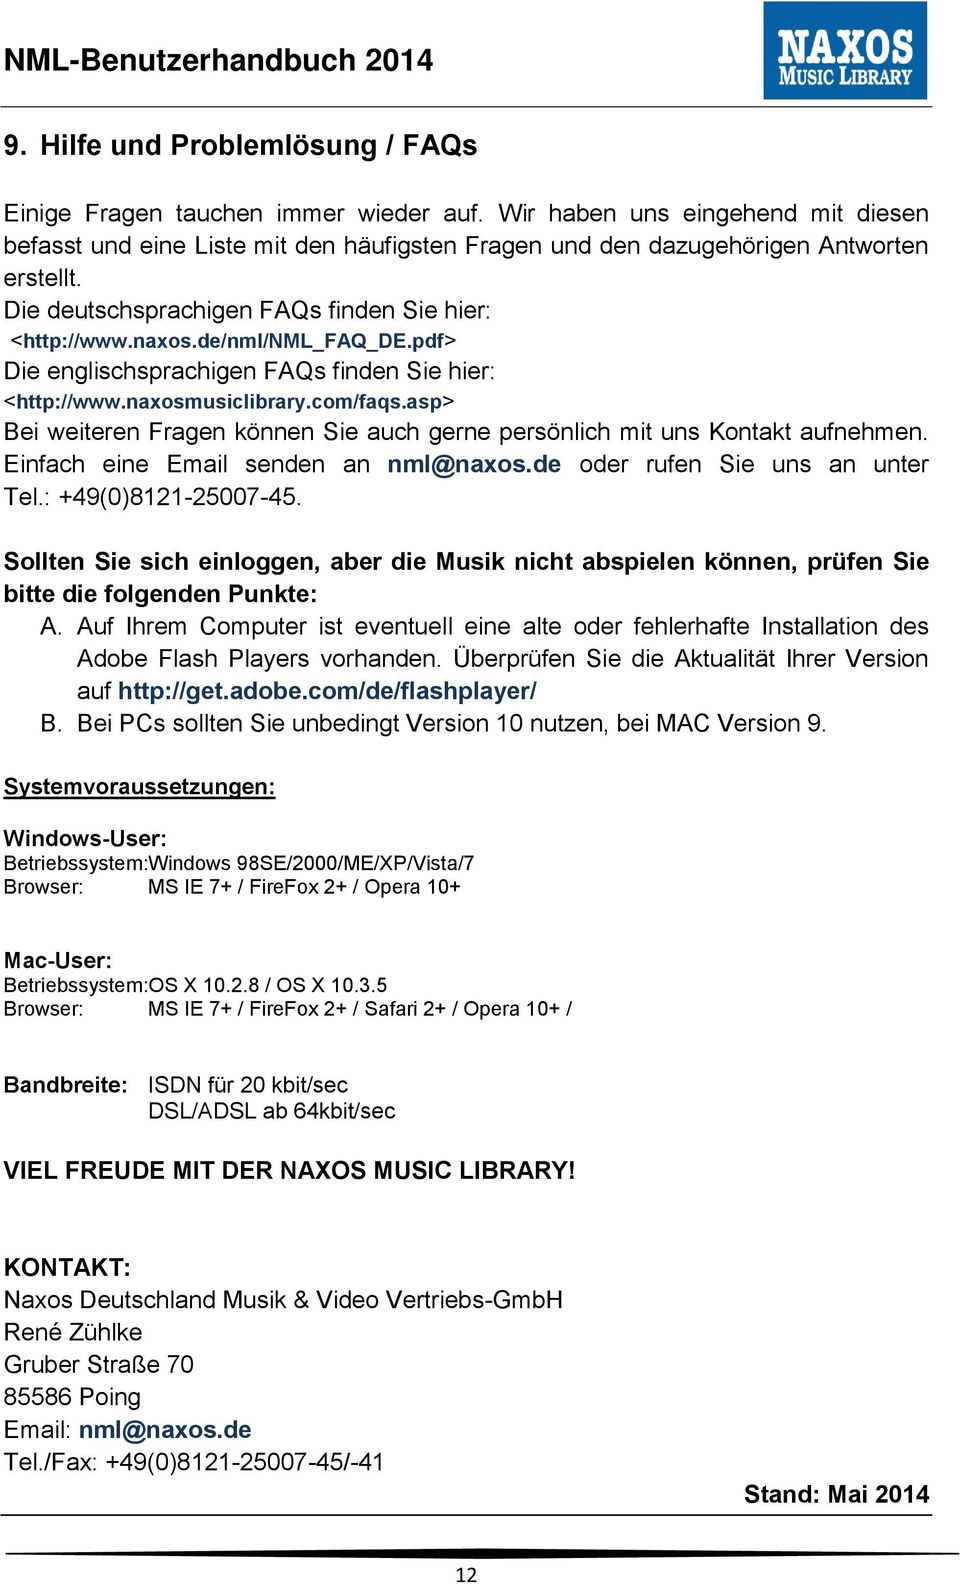 asp> Bei weiteren Fragen können Sie auch gerne persönlich mit uns Kontakt aufnehmen. Einfach eine Email senden an nml@naxos.de oder rufen Sie uns an unter Tel.: +49(0)8121-25007-45.